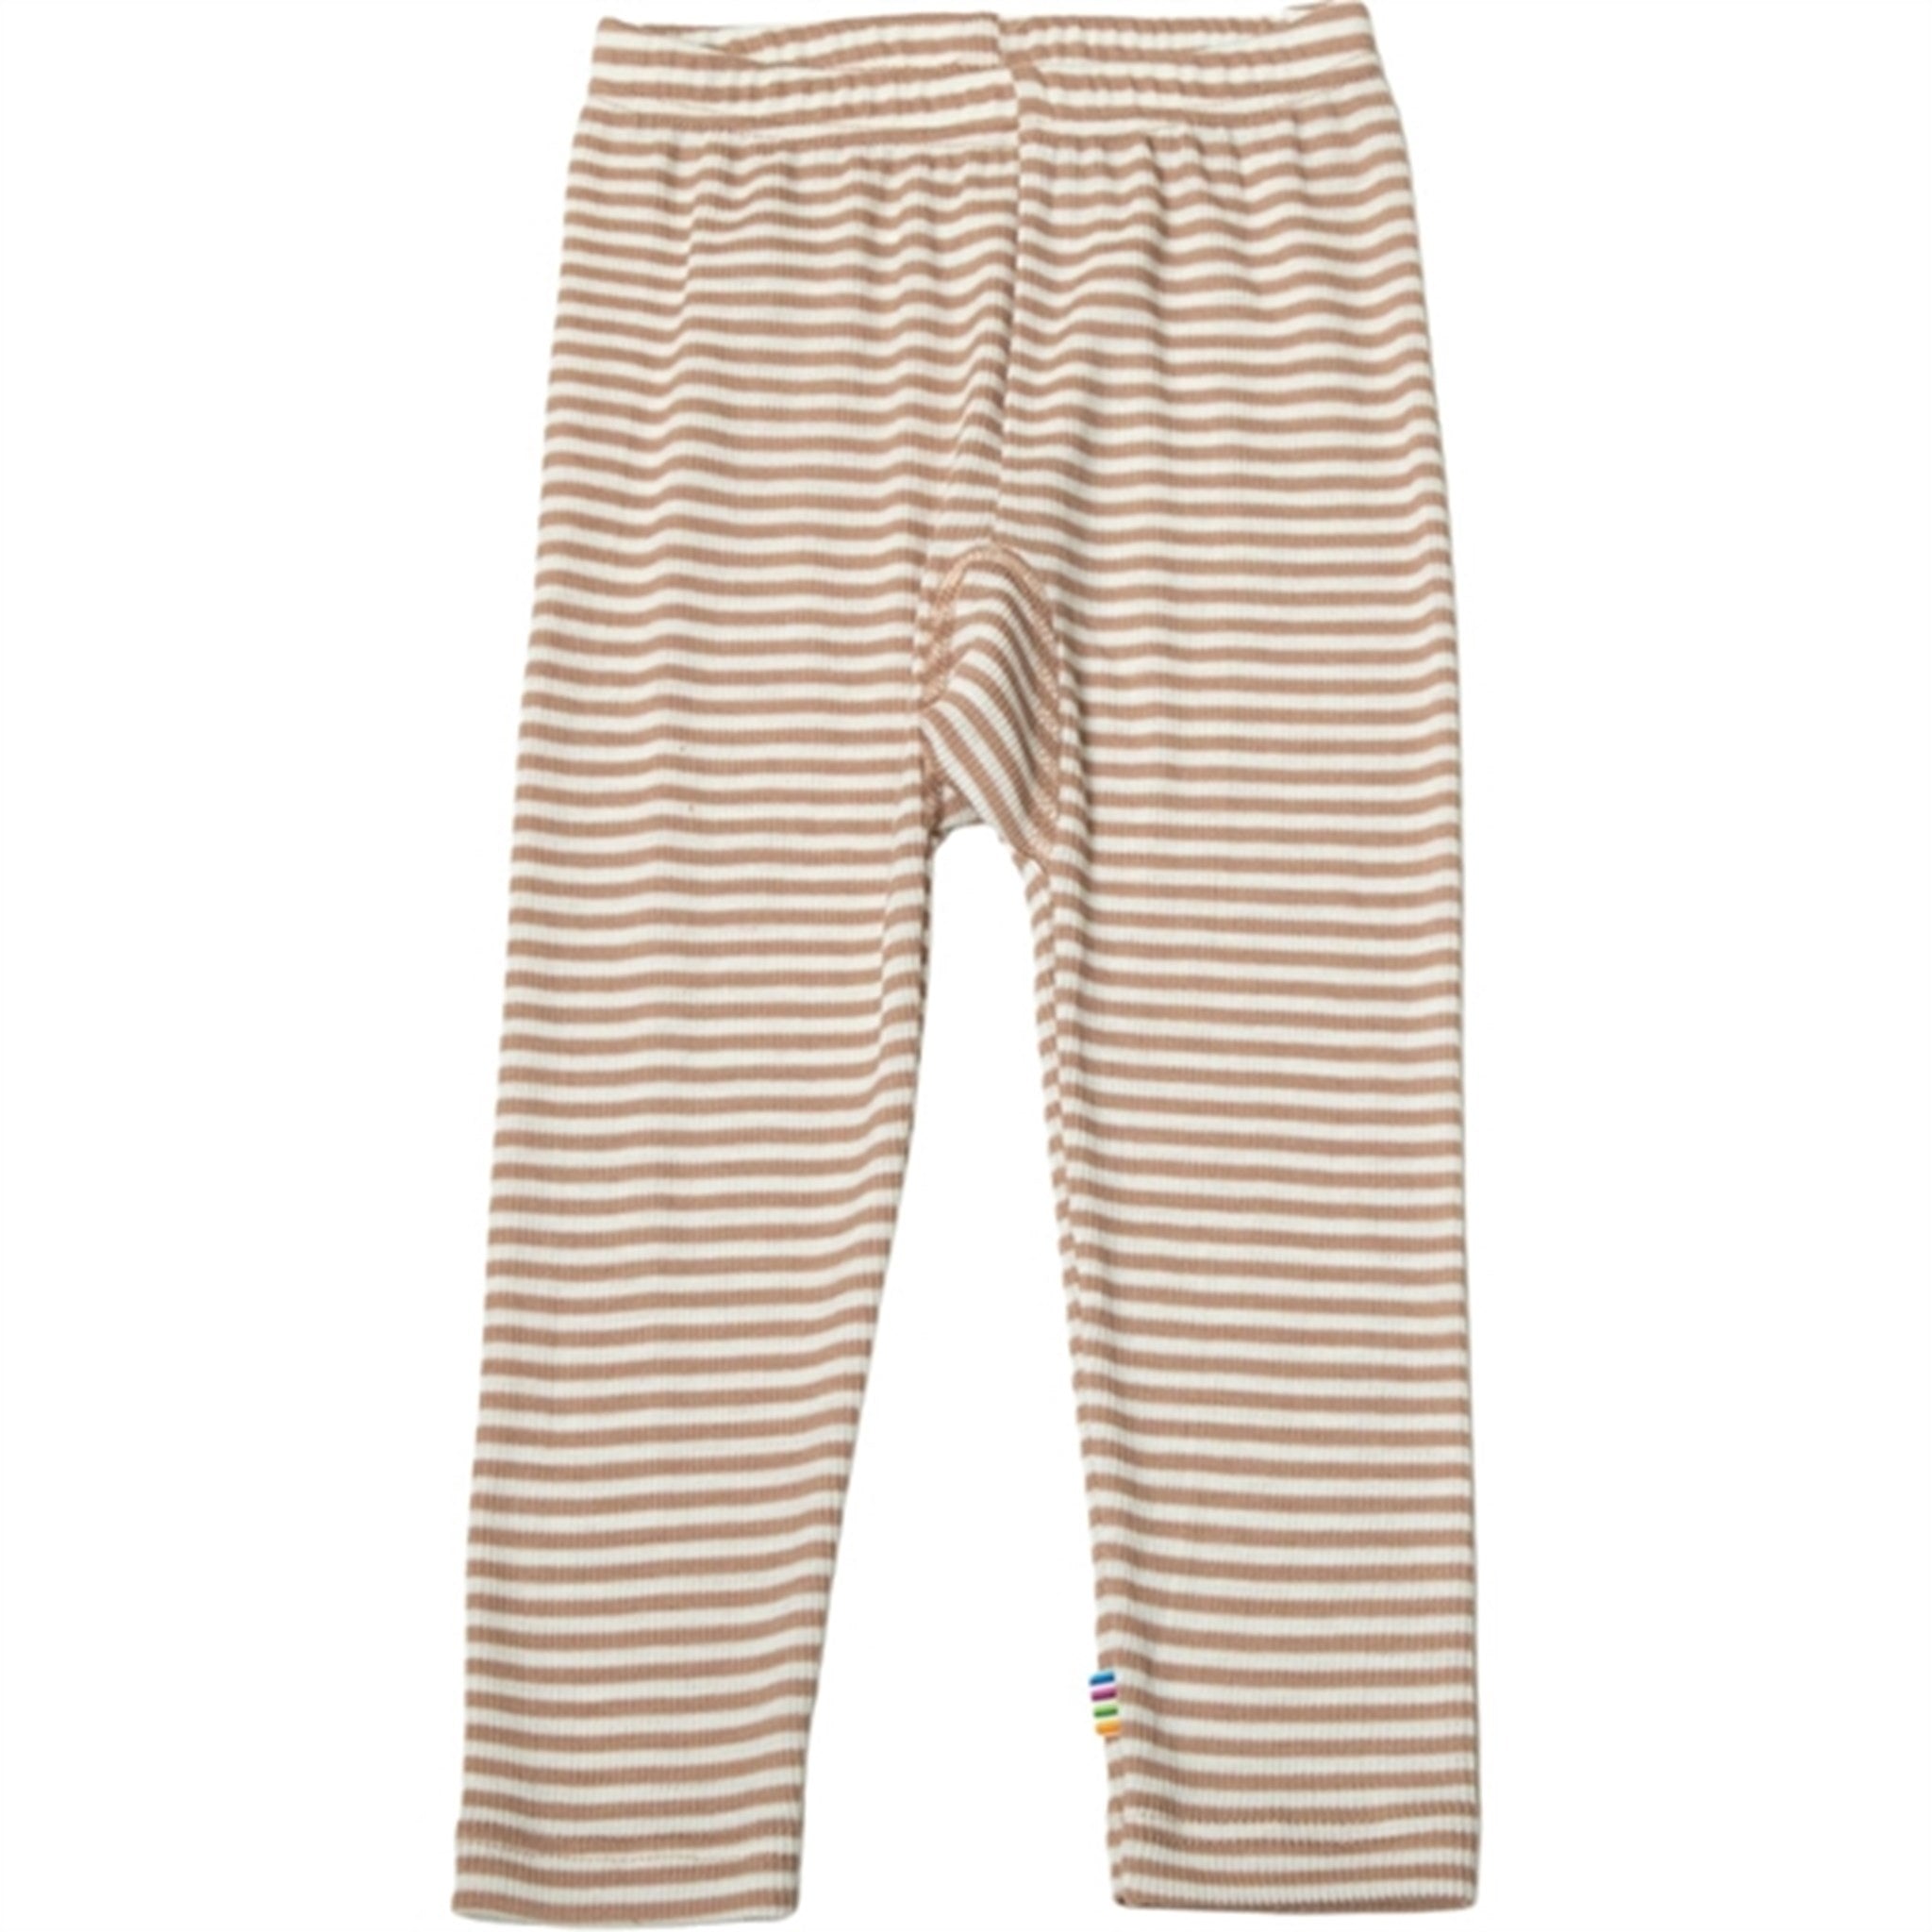 Joha Uld/Silke Light Brown Stripe Leggings